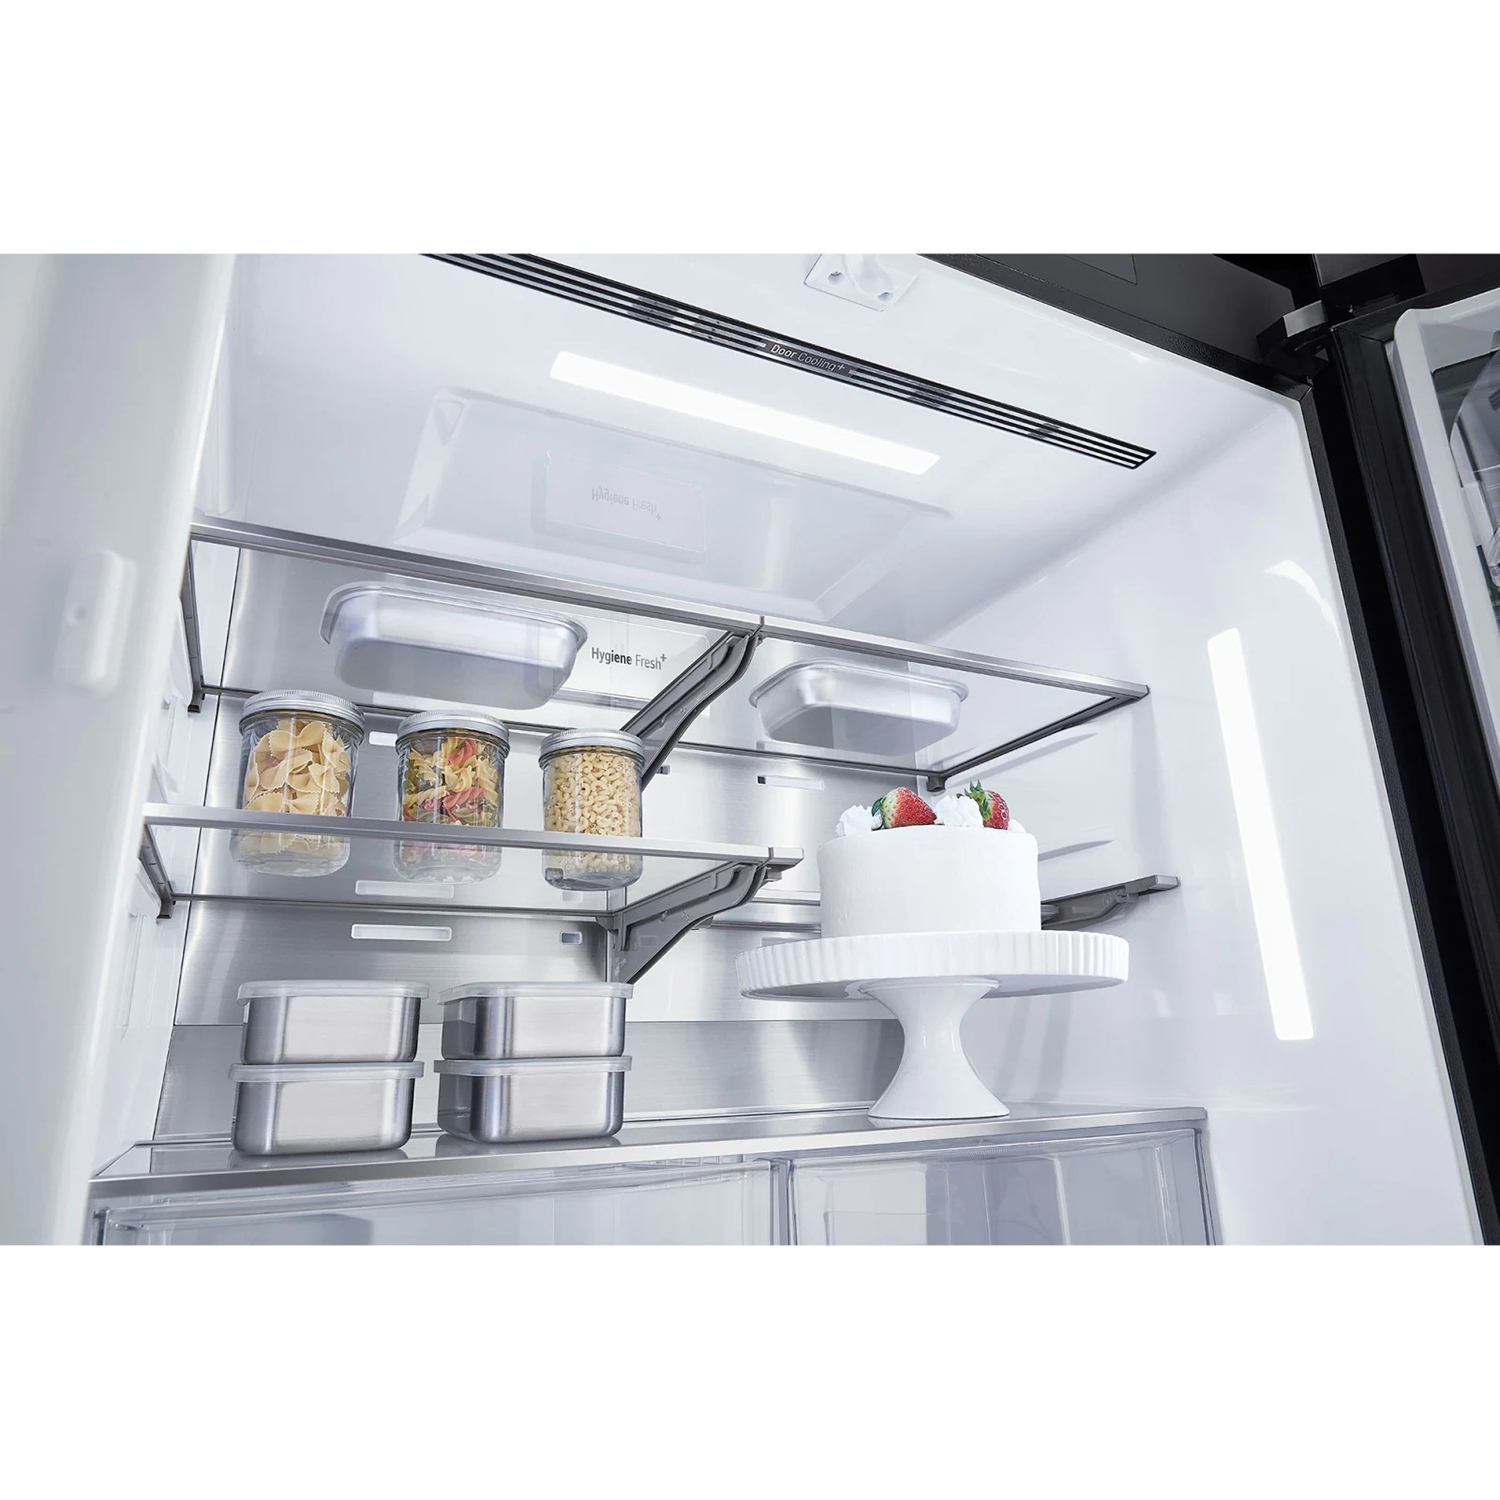 Холодильник LG Objet GR-A24 FQAKM, стальной